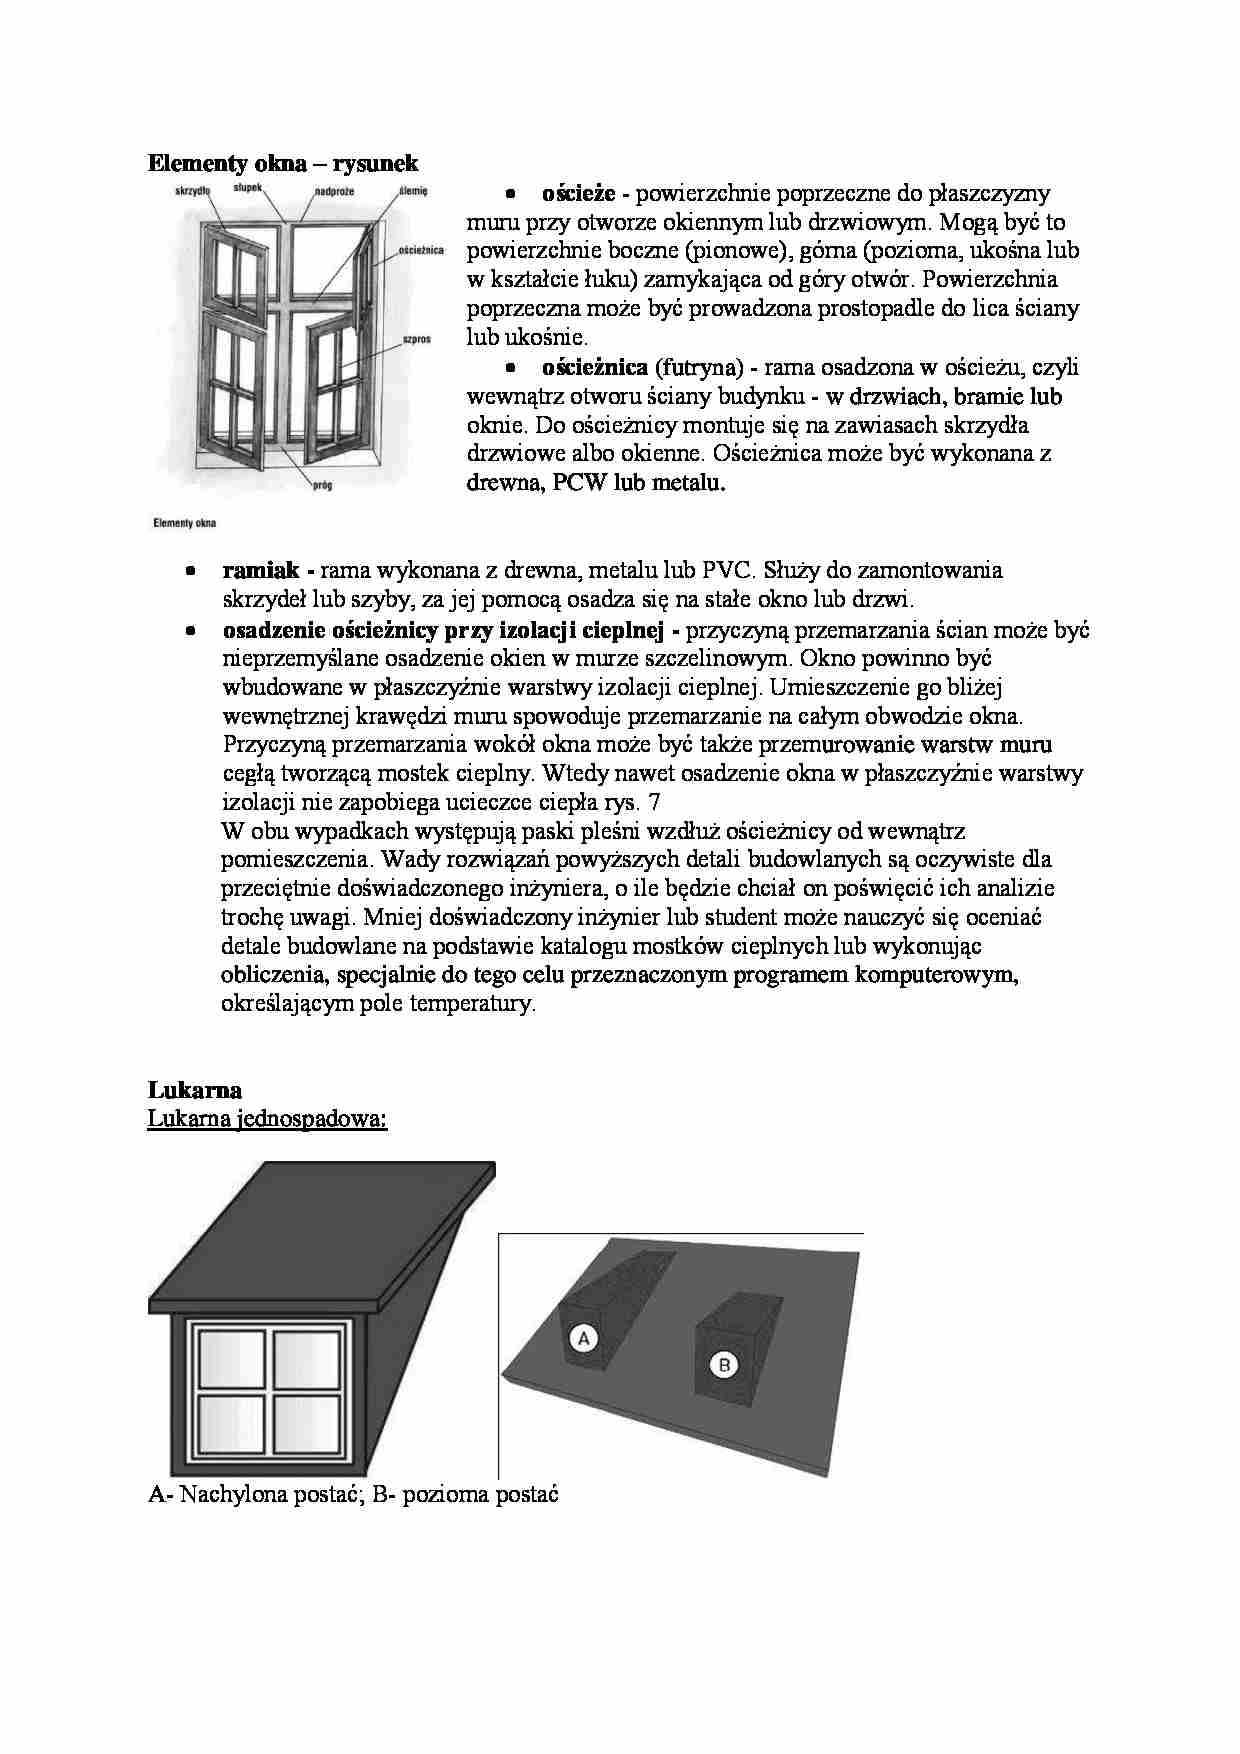 Elementy okna i opisana lukarna - omówienie  - strona 1